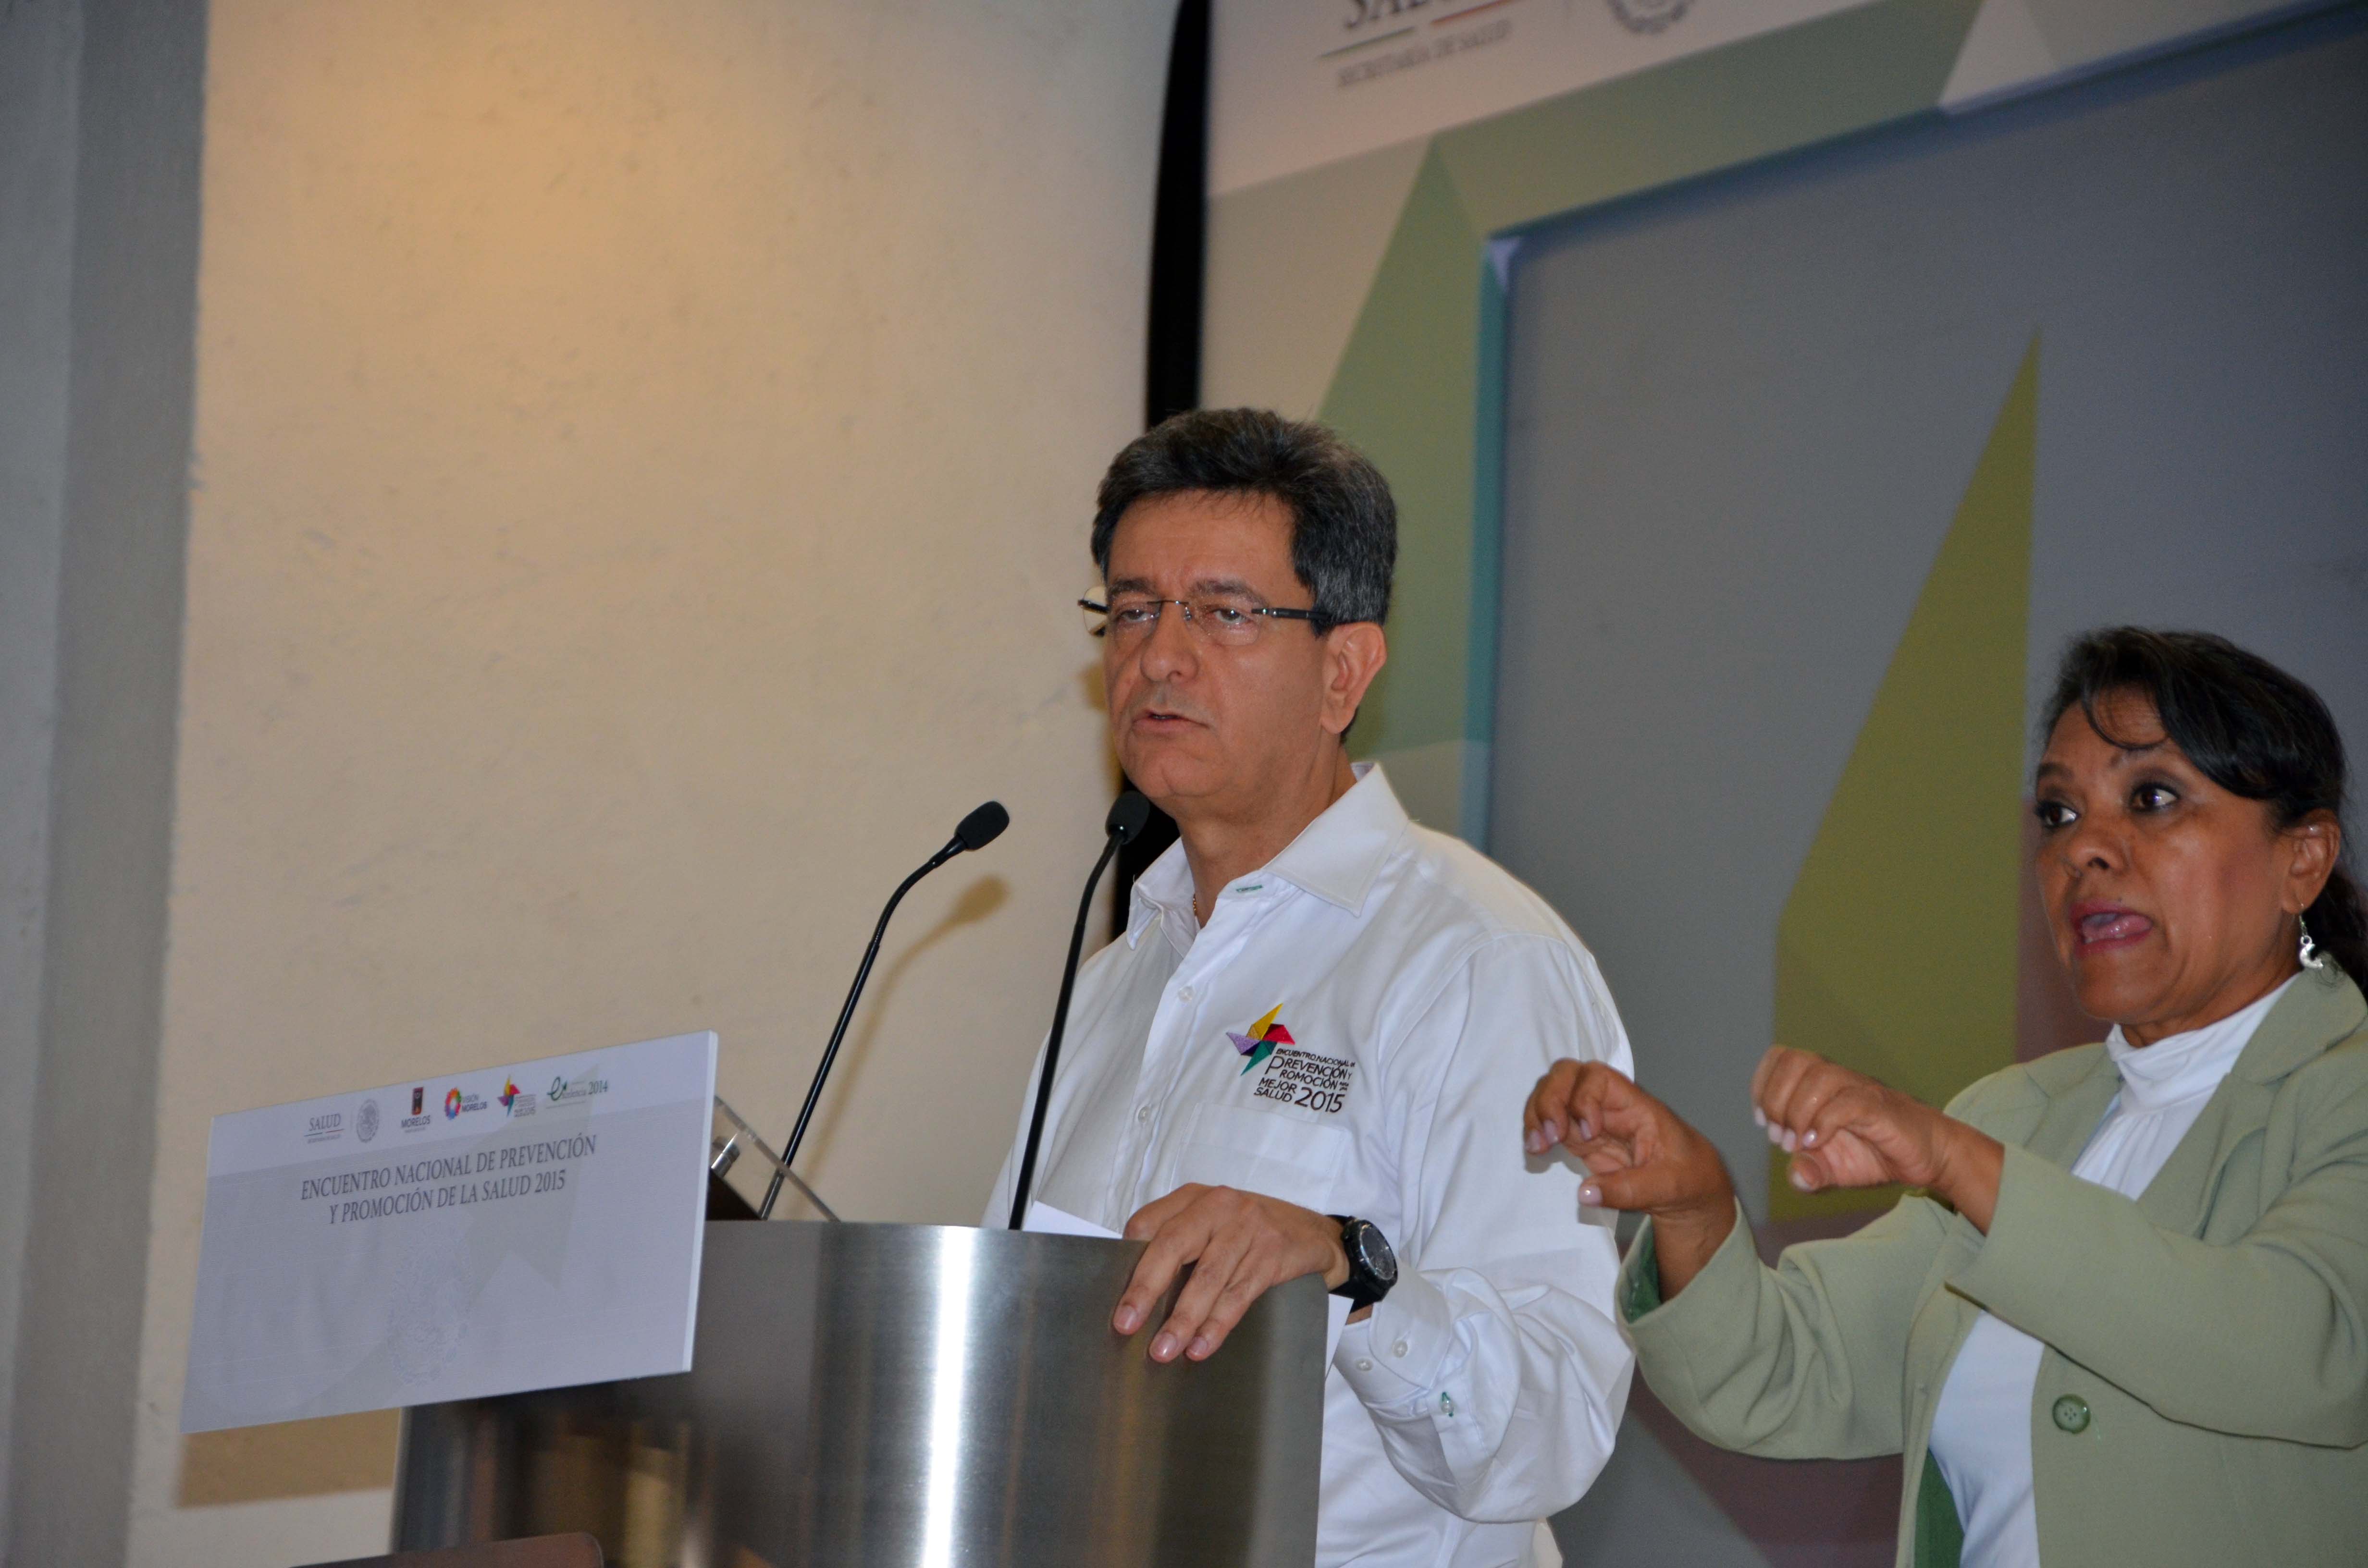 En el marco del Encuentro Nacional de Prevención y Promoción de la Salud 2015. 

Participación del Dr. Pablo Kuri Morales.